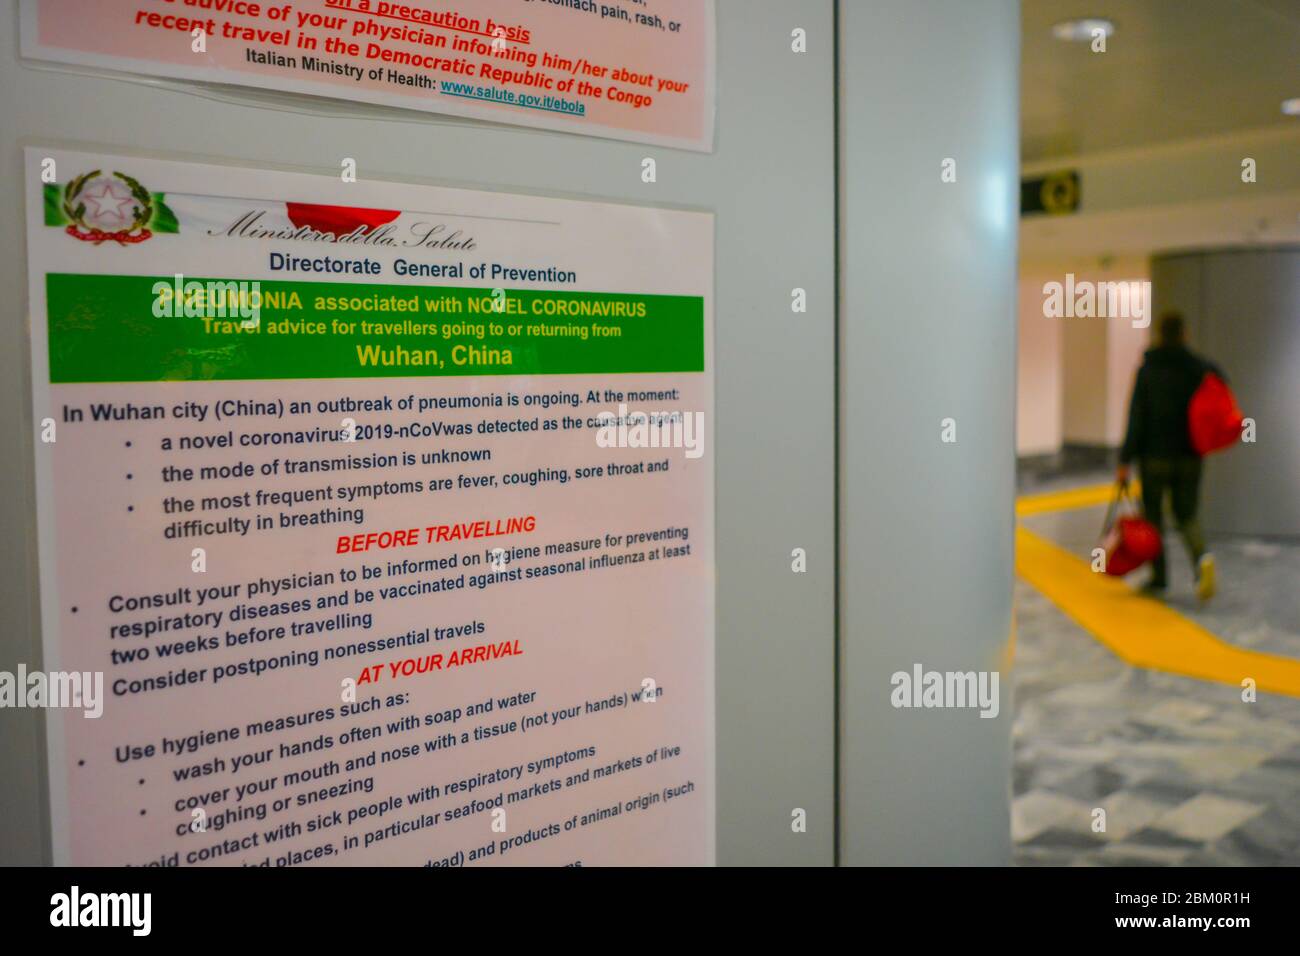 Flughafen Mailand Malpensa MXP, Italien: Warnung des Gesundheitsministeriums über Corona-Virus COVID-19 in englischer Sprache. Schild weist auf Regeln hin Stockfoto